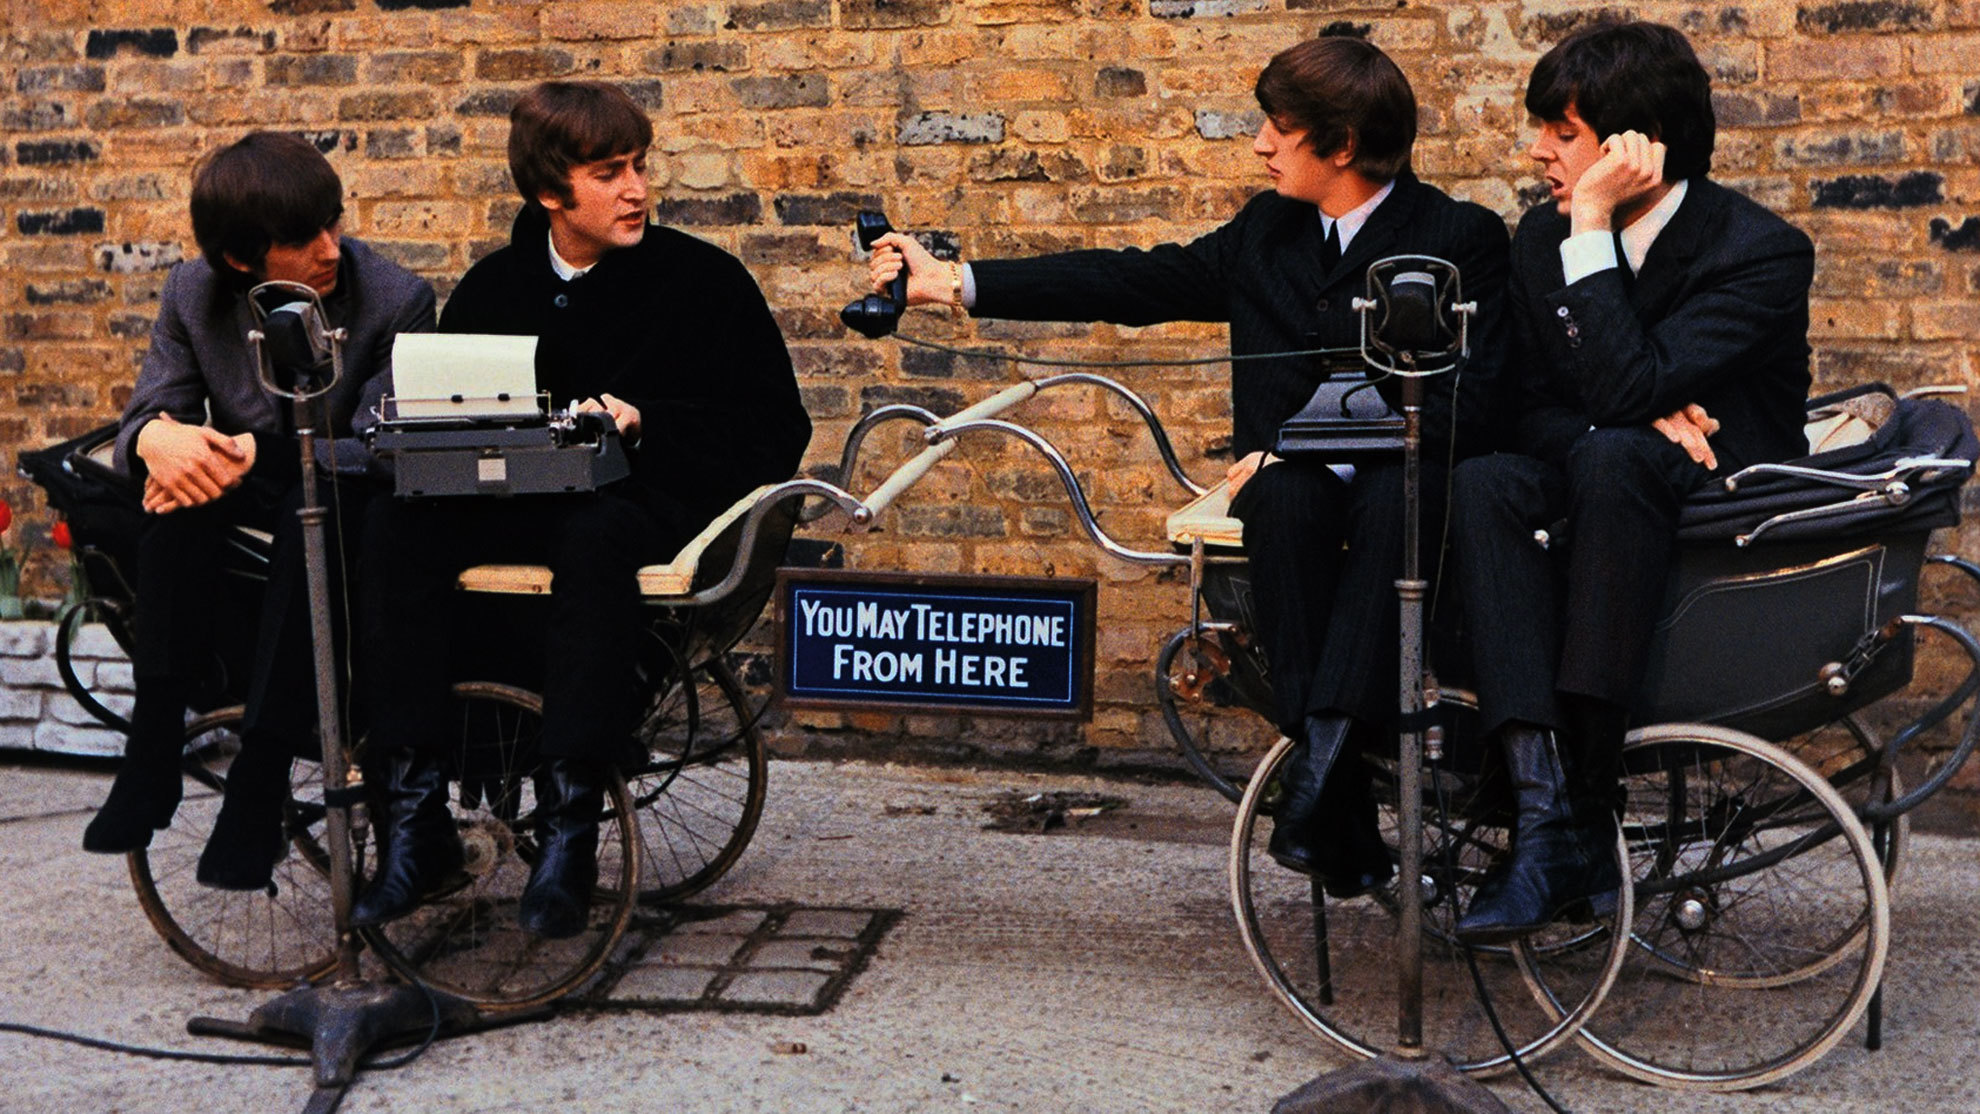 The Beatles tendrán cuatro películas dirigidas por Sam Mendes centradas en la ruptura del grupo